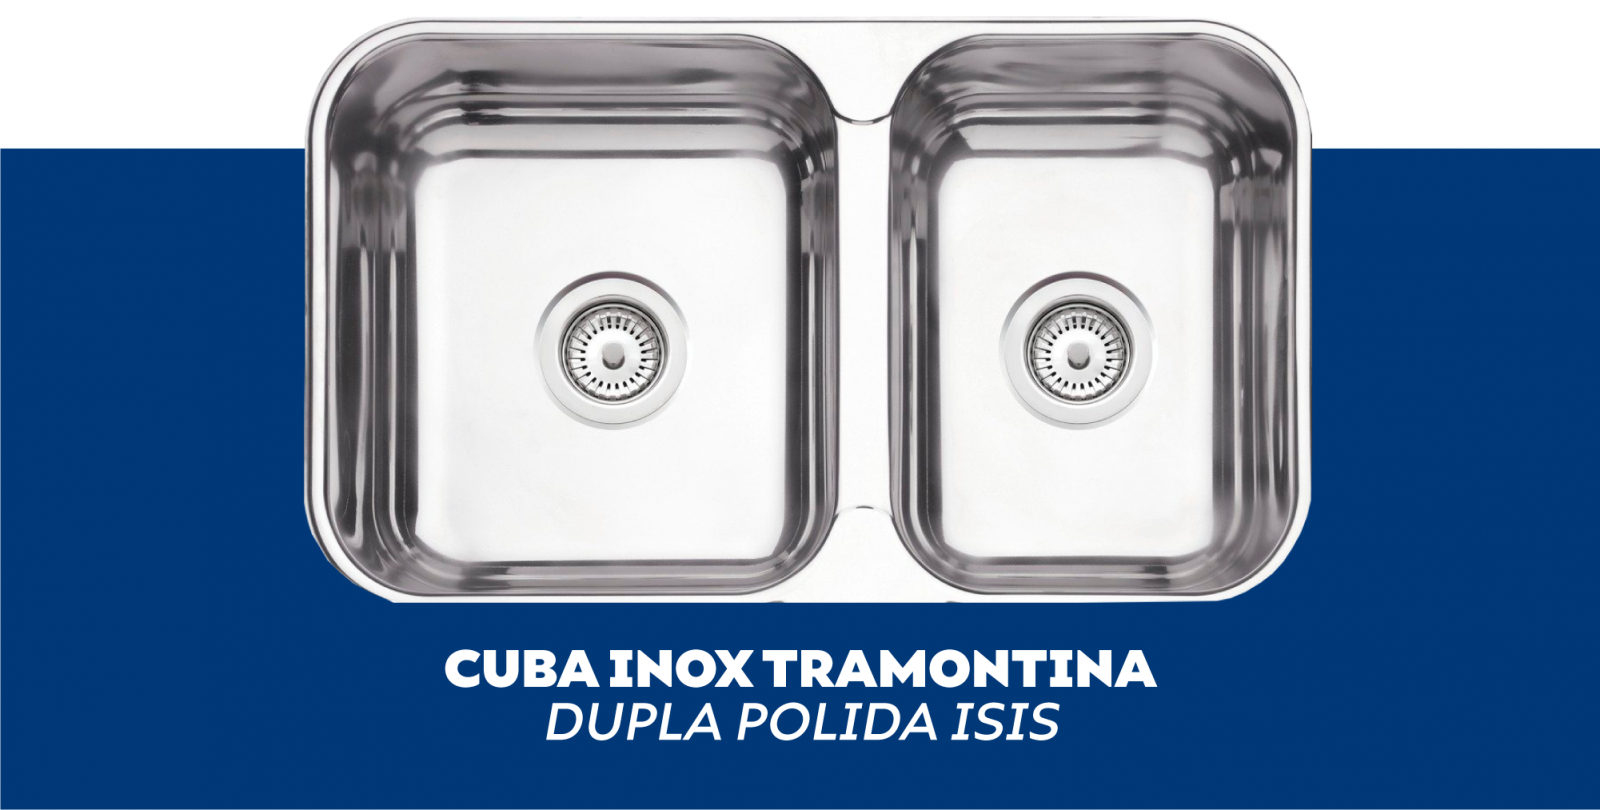 Cuba Inox Tramontina Dupla Polida Isis 2C 34-28 BS